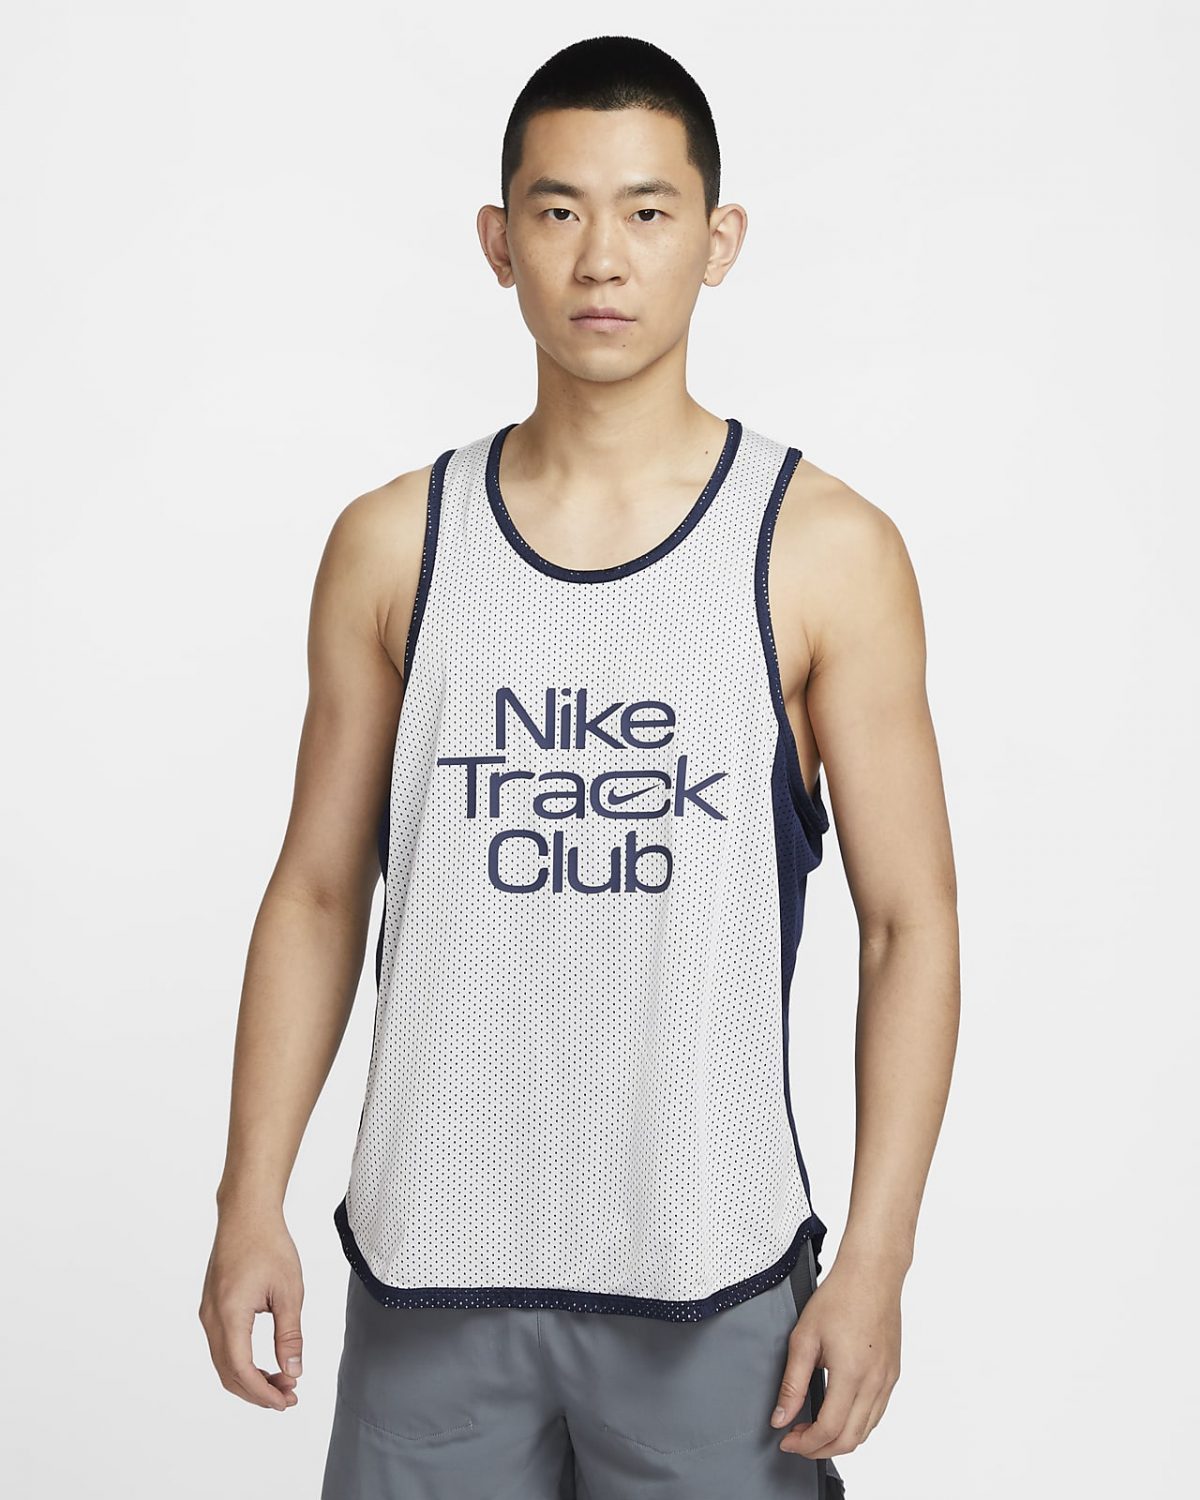 Мужская спортивная одежда Nike Track Club фото